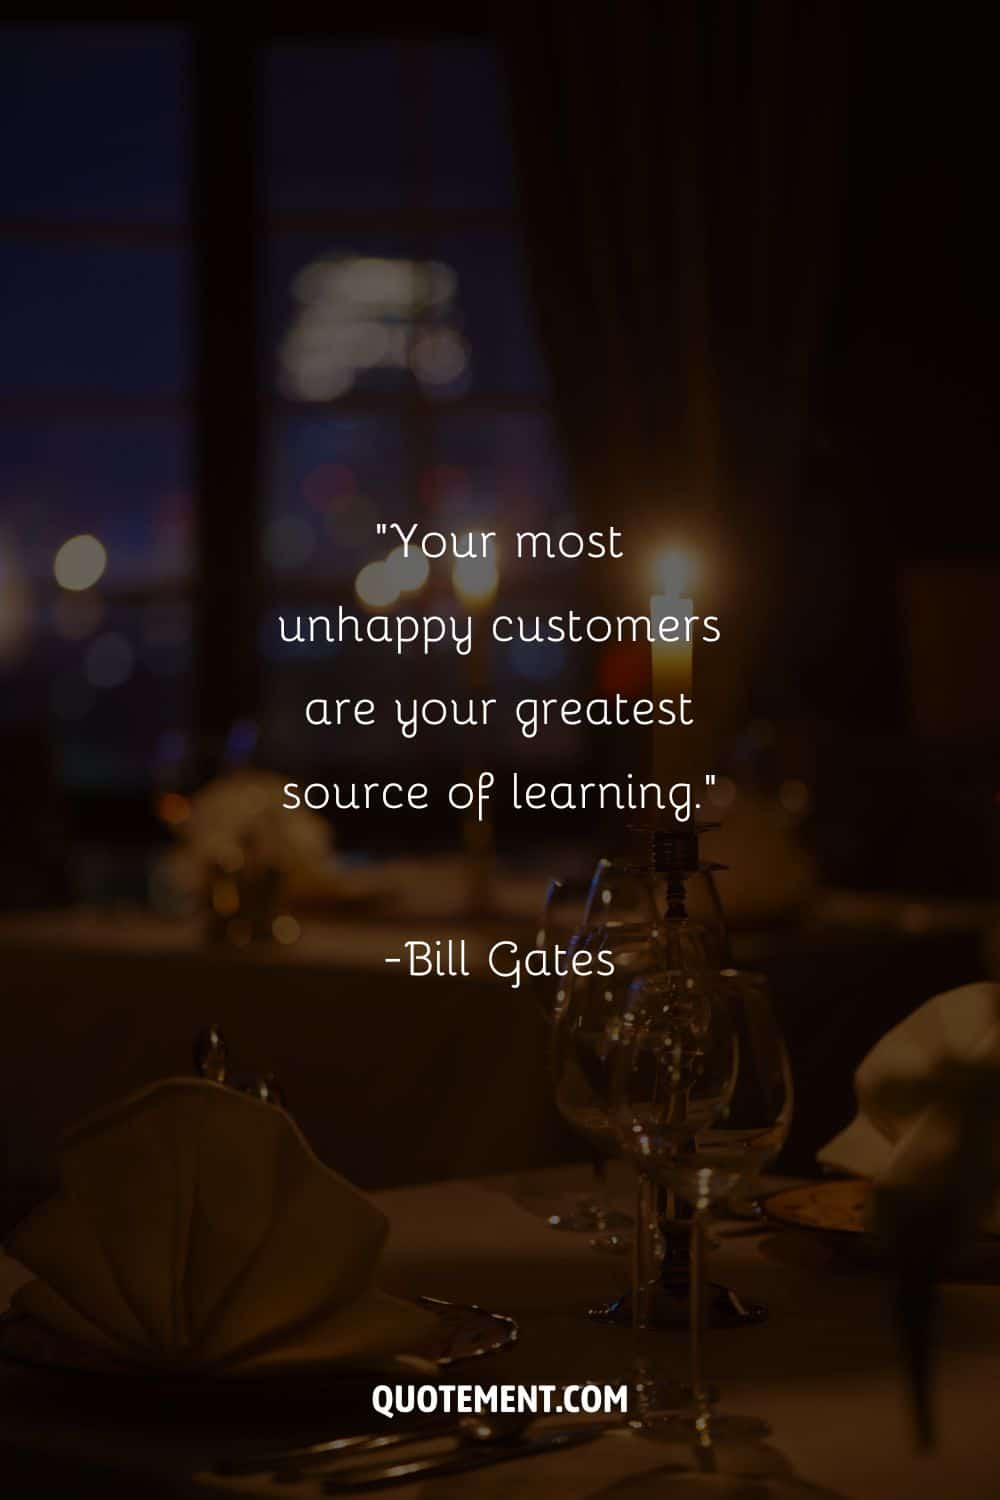 Imagen de mesa de restaurante que representa una cita sobre clientes insatisfechos.